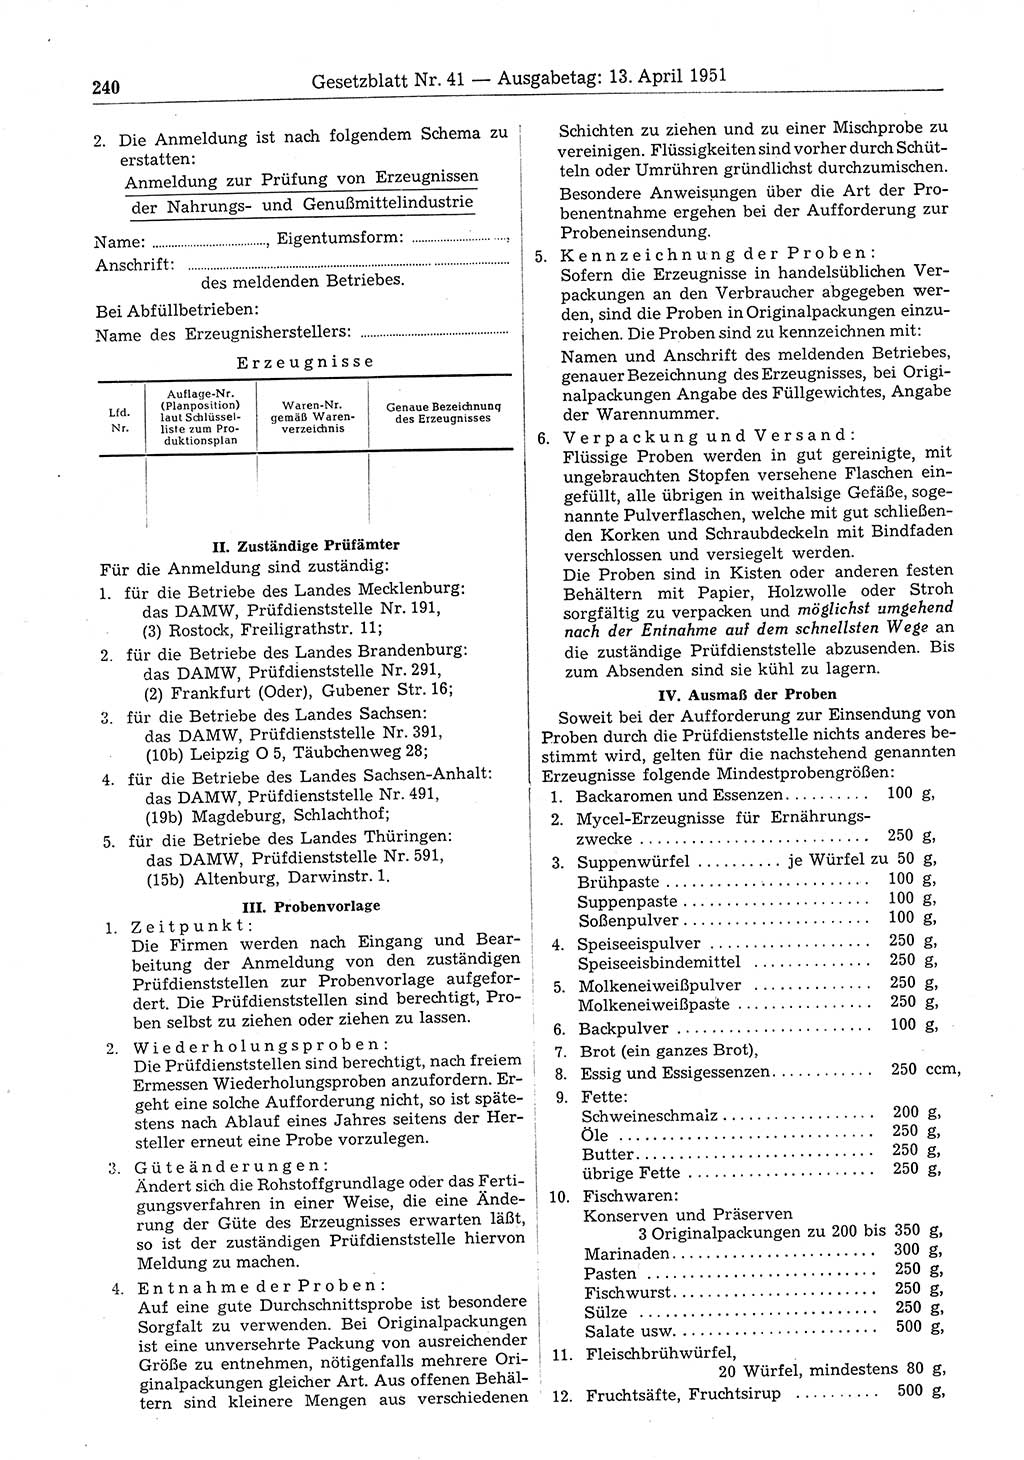 Gesetzblatt (GBl.) der Deutschen Demokratischen Republik (DDR) 1951, Seite 240 (GBl. DDR 1951, S. 240)